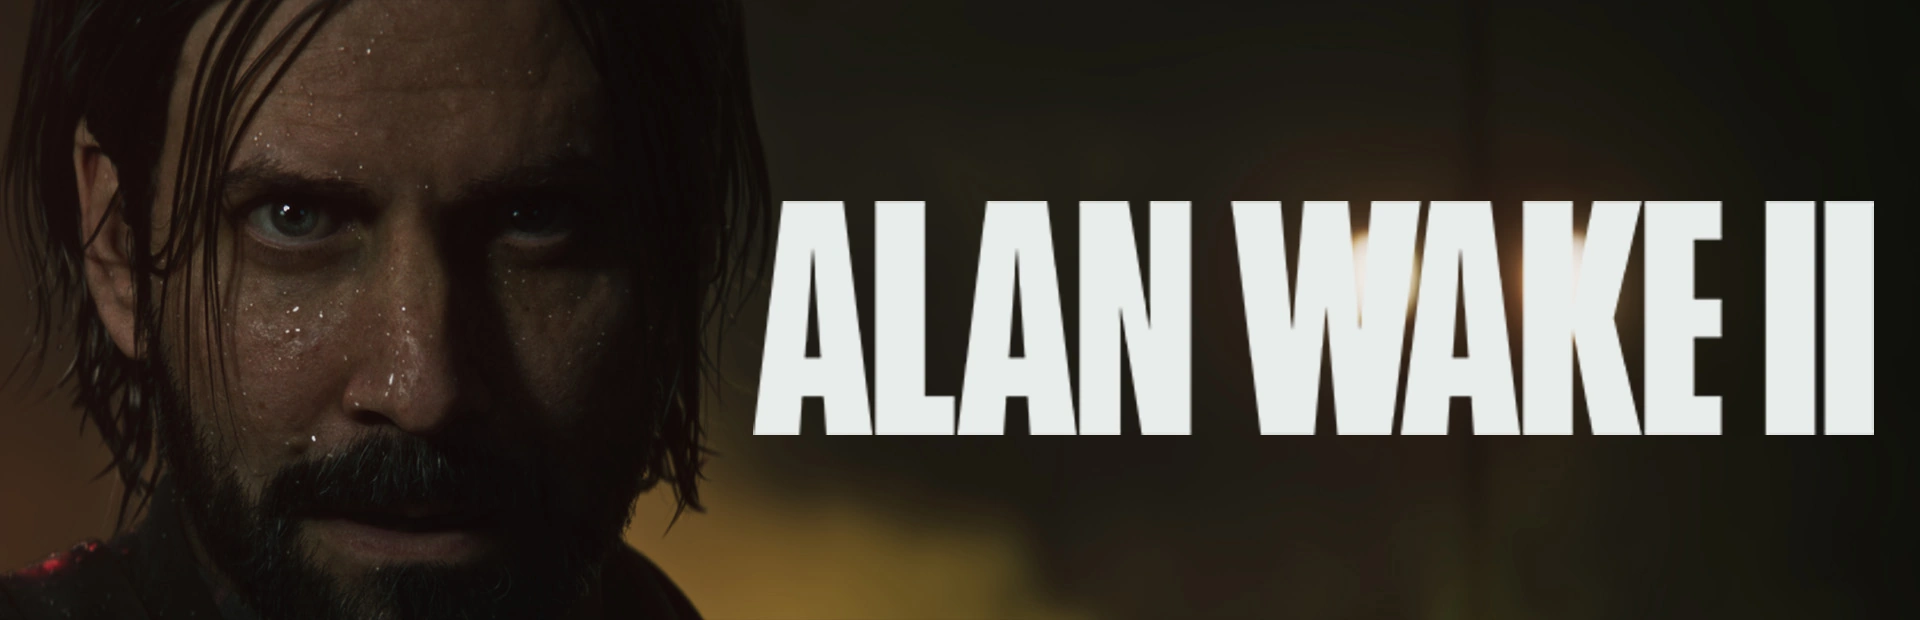 دانلود بازی Alan Wake 2 برای کامپیوتر | گیمباتو